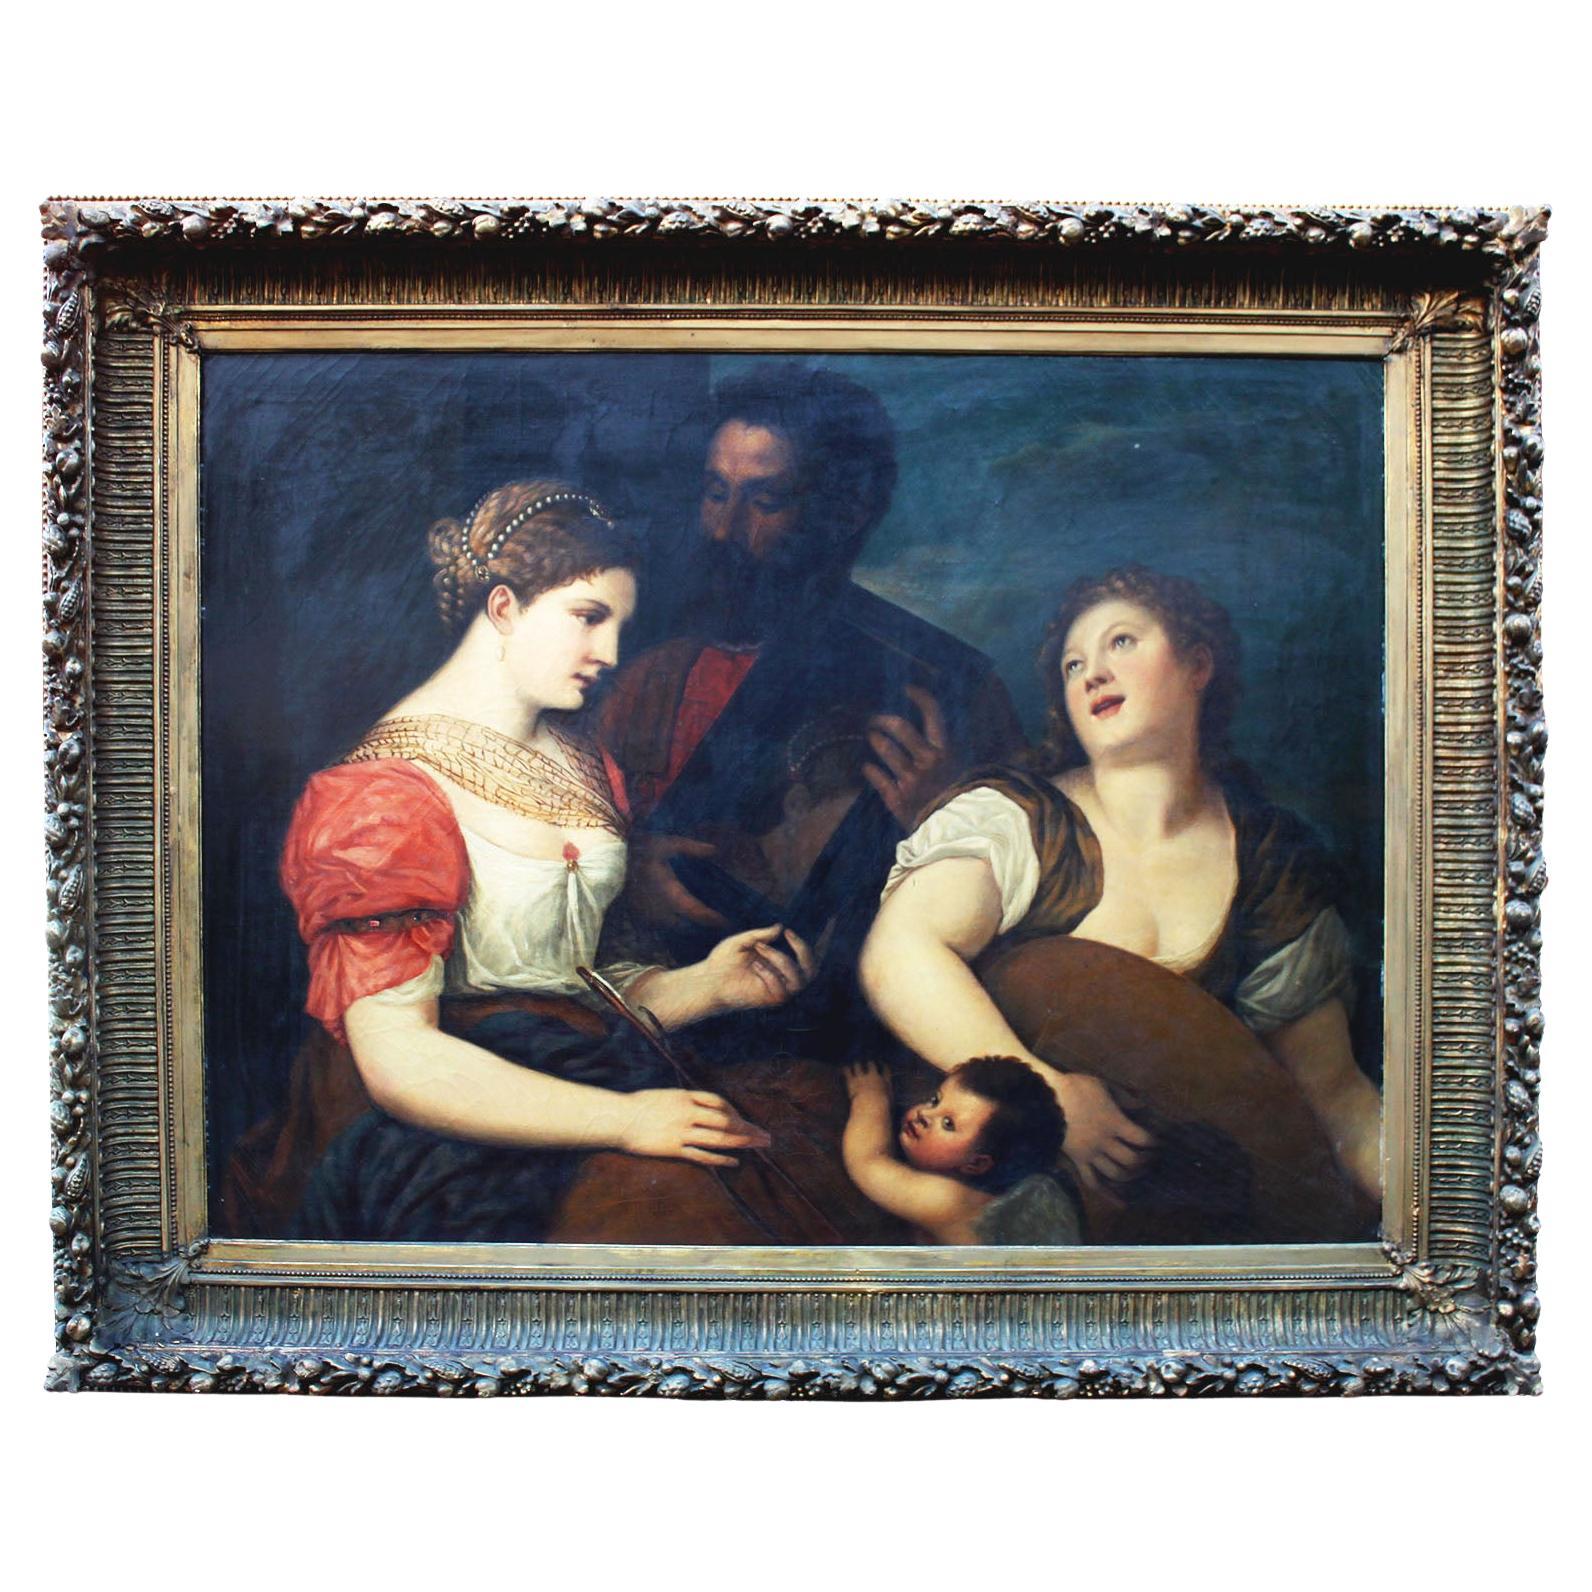 "Une allégorie de l'amour  Huile sur toile du 19ème siècle d'après le Titien - Tiziano Vecellio